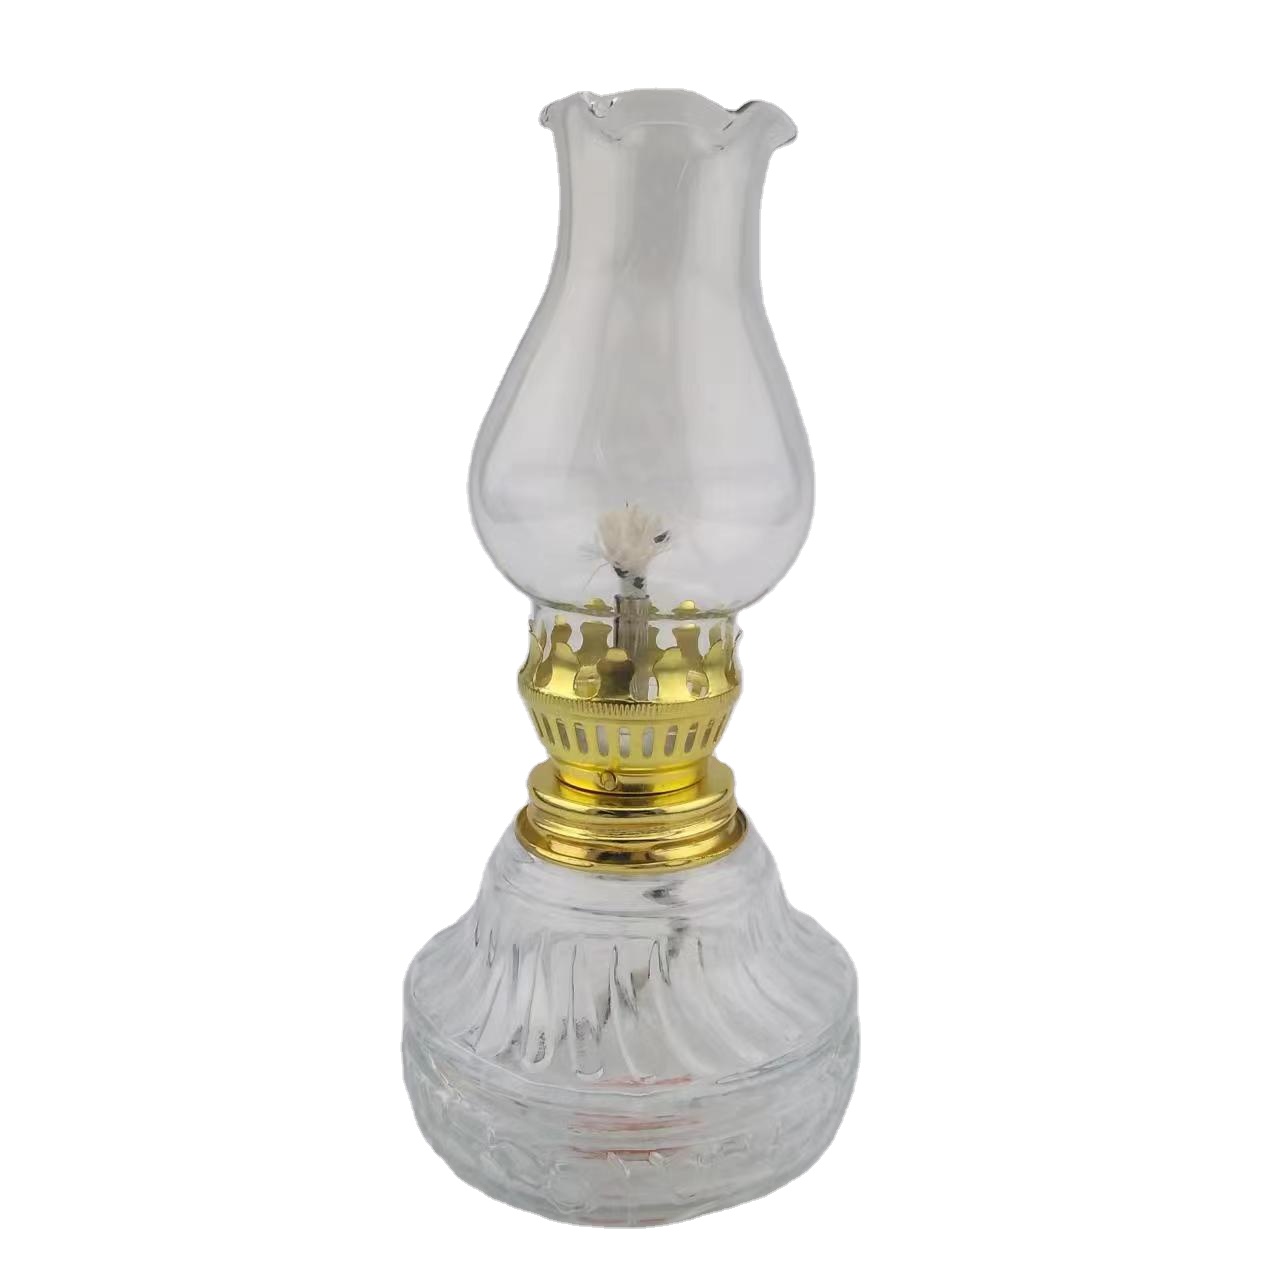 Linlang Shanghai Hot Sell Antique Decorative Kerosene Oil Lamps Embossed Glass Kerosene Lamp Glass Oil Lamp